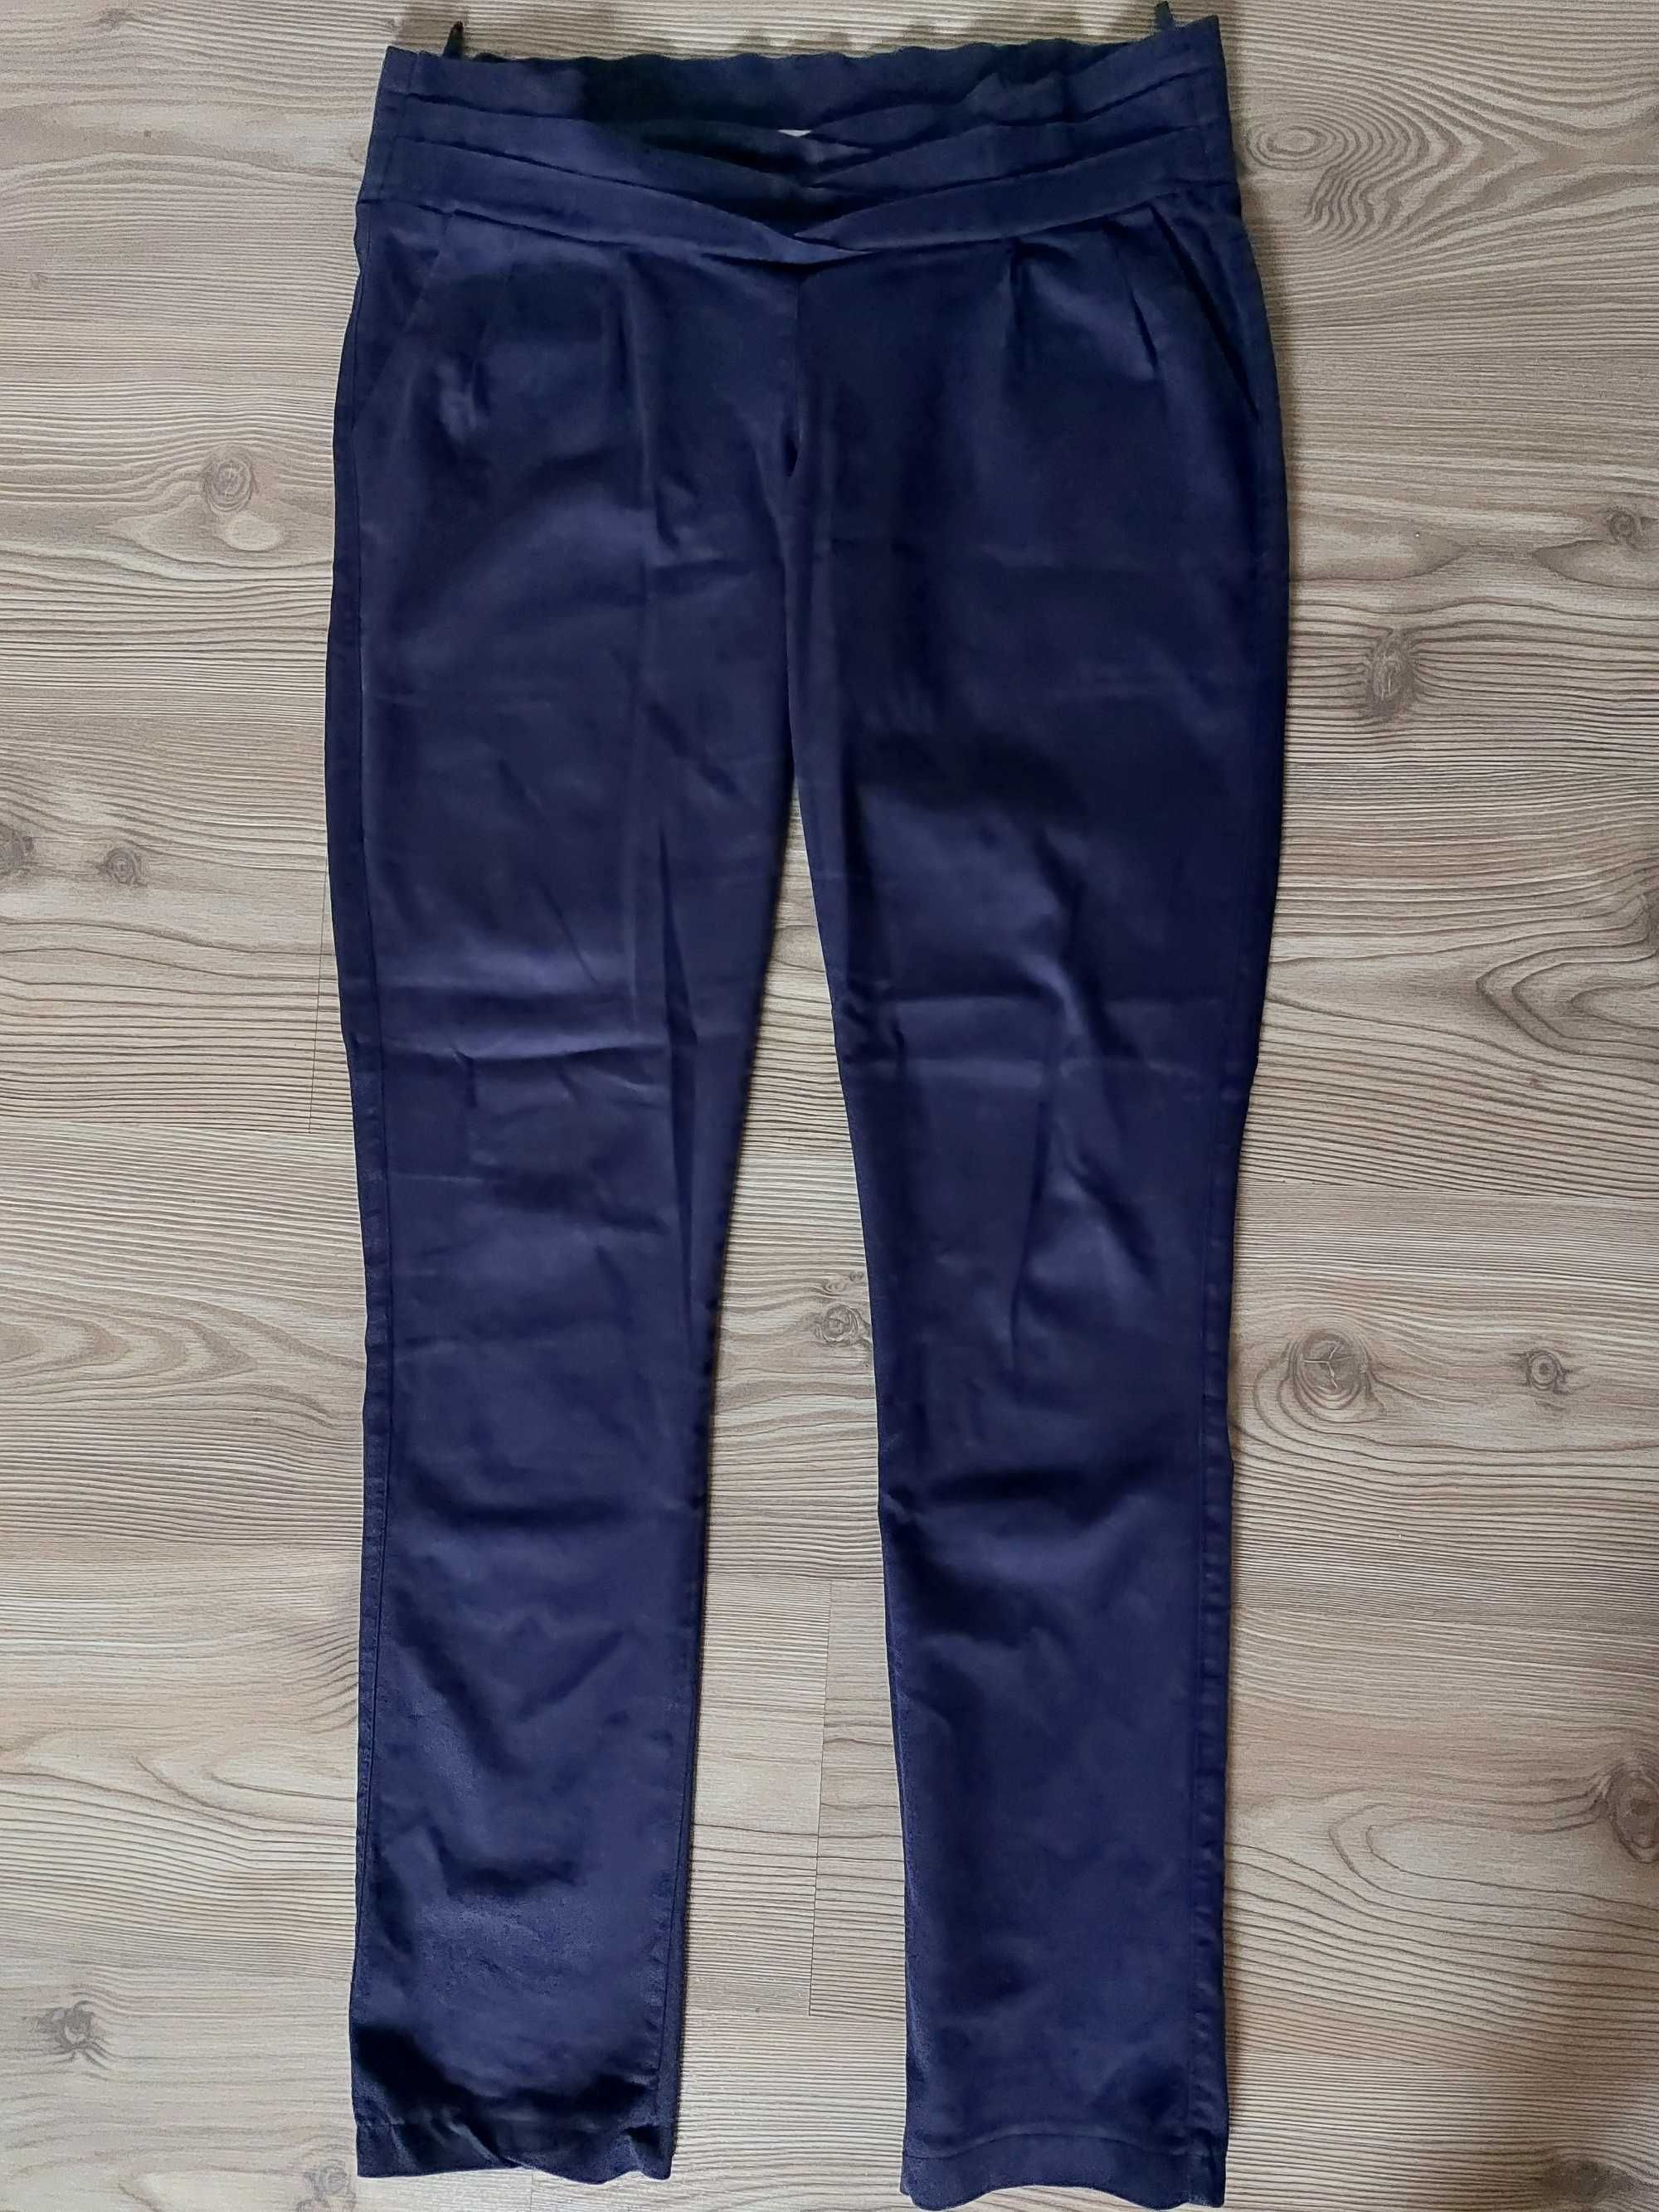 Брюки штаны синие, черные, белые размер 42, 44